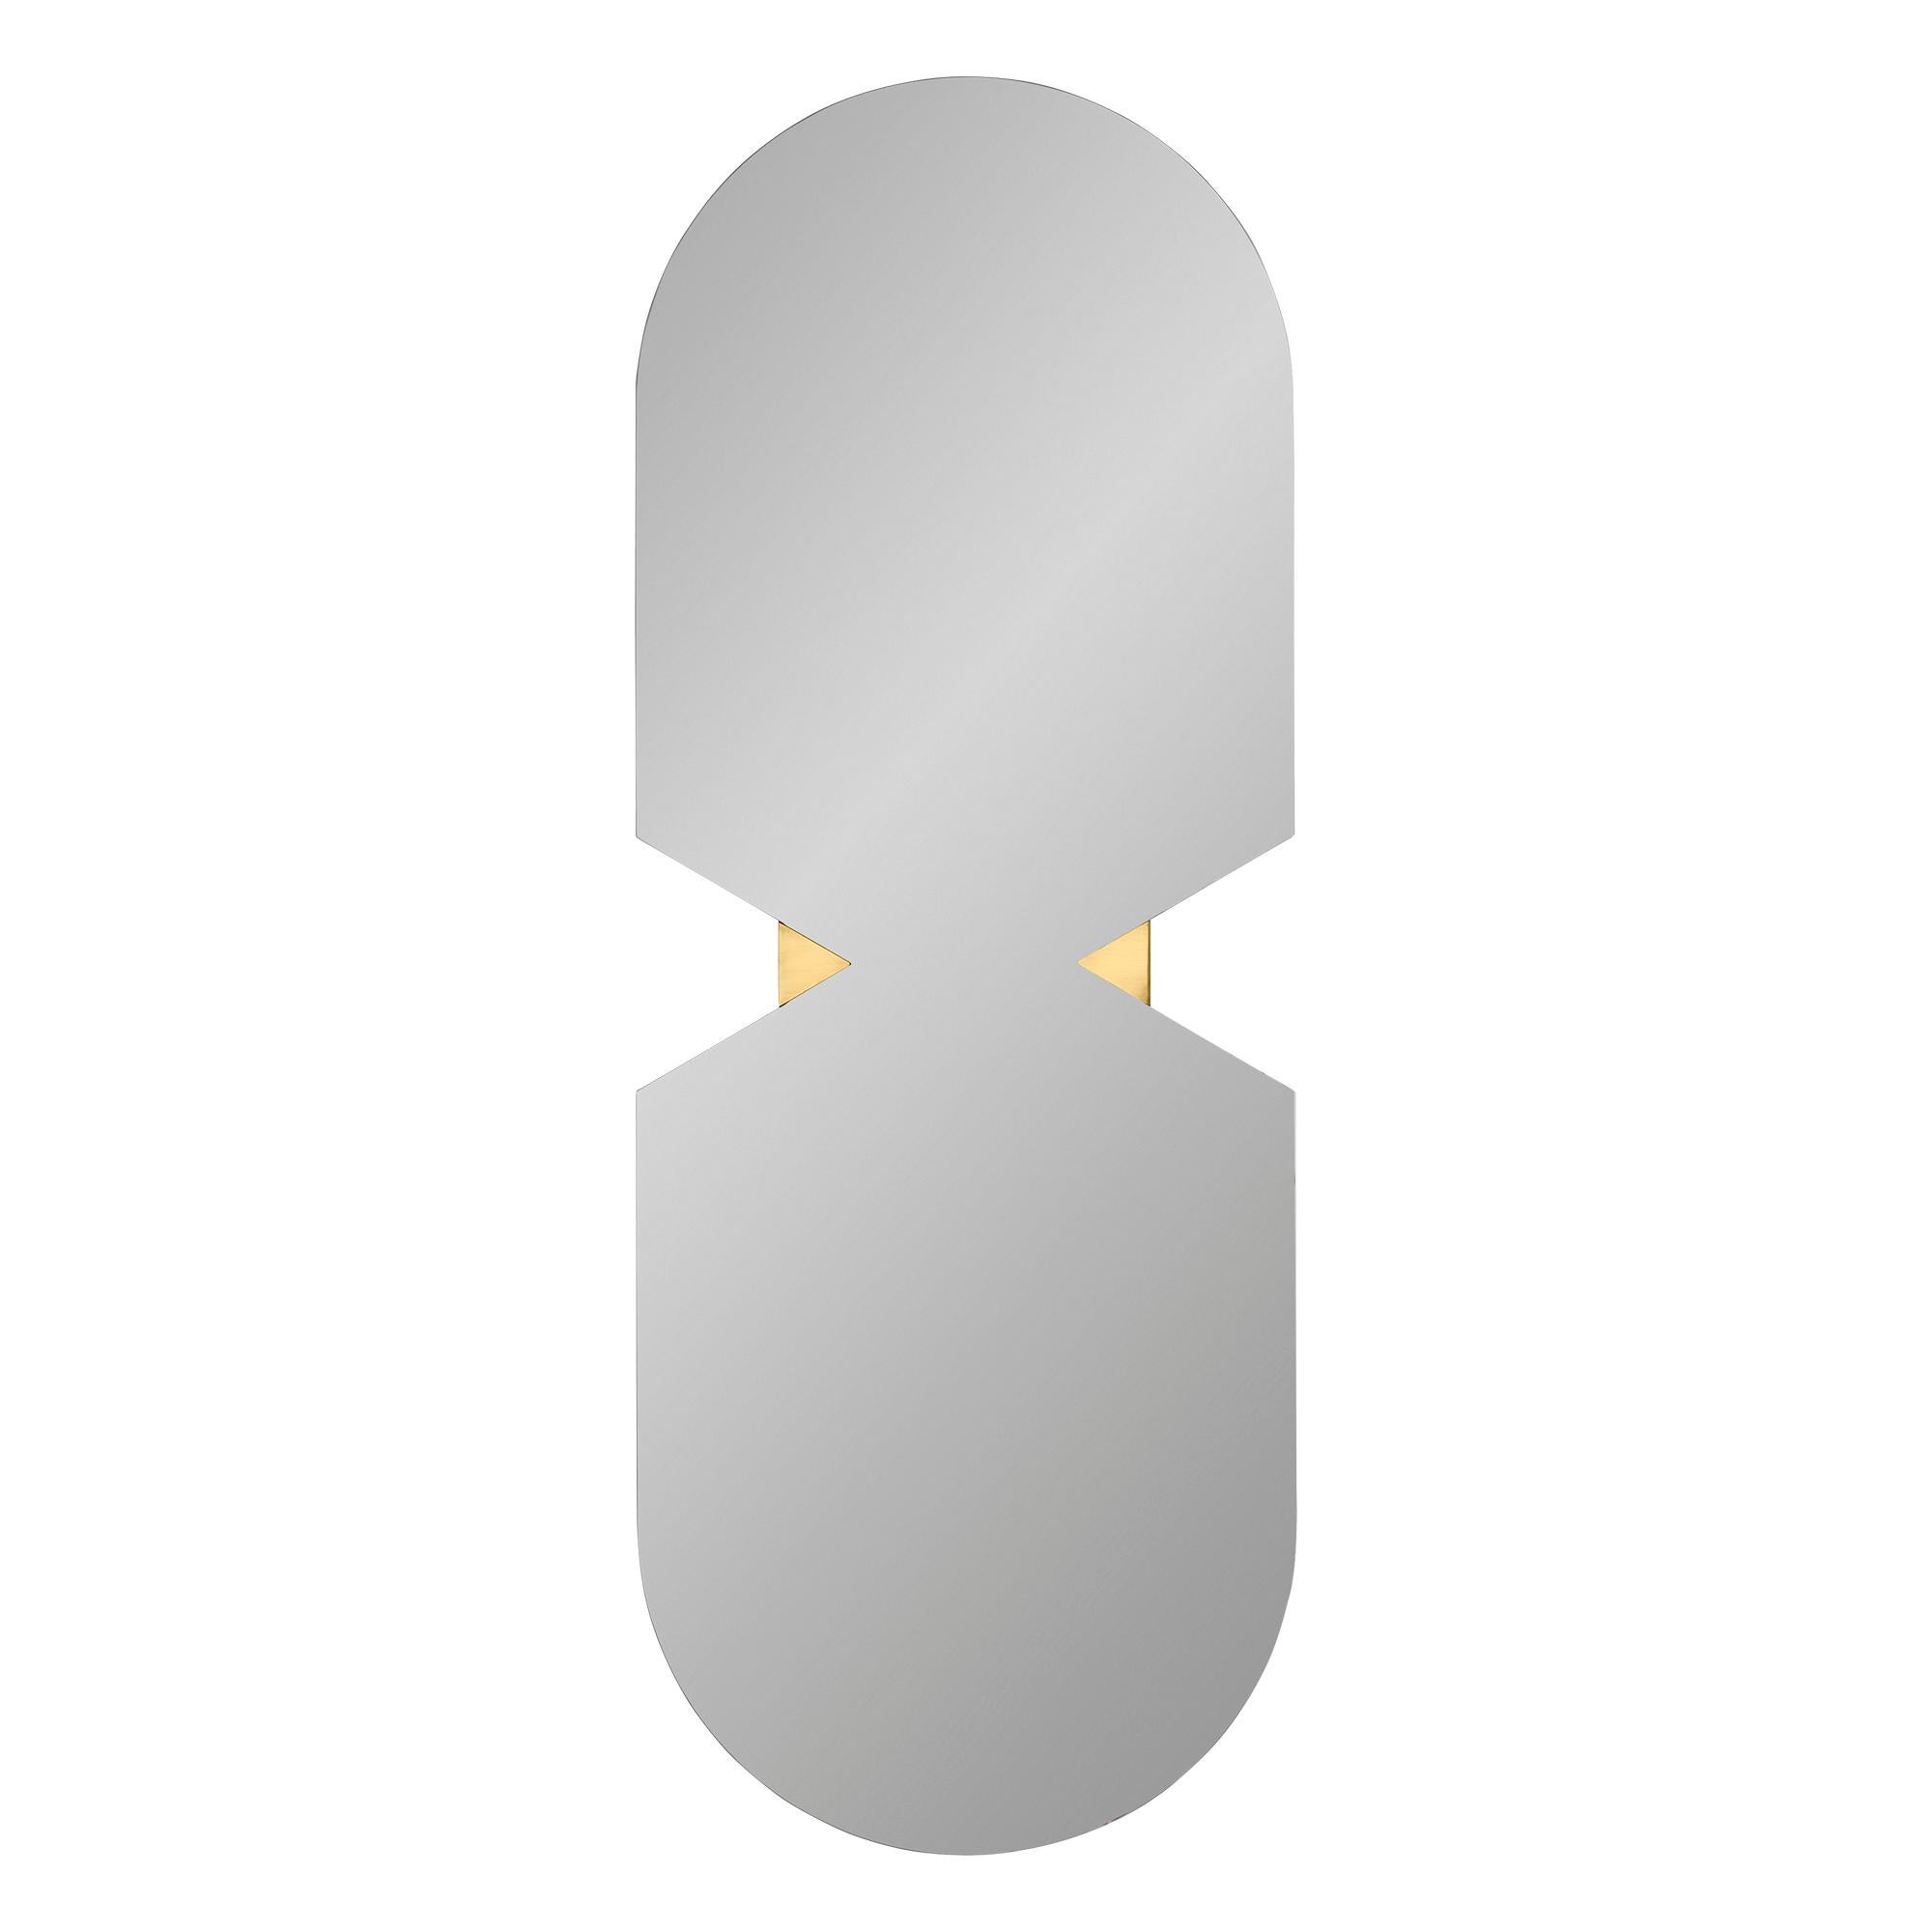 Zeitgenössischer ovaler Spiegel
Abmessungen: H 120x B 44,5 x T 1,4 CM
MATERIALIEN: Glas, Kupfer, MDF

Der Verto Spiegel ist ein Produkt, das mehr als nur den praktischen Zweck eines Spiegels erfüllt. Es handelt sich um ein Wandkunstwerk, das die